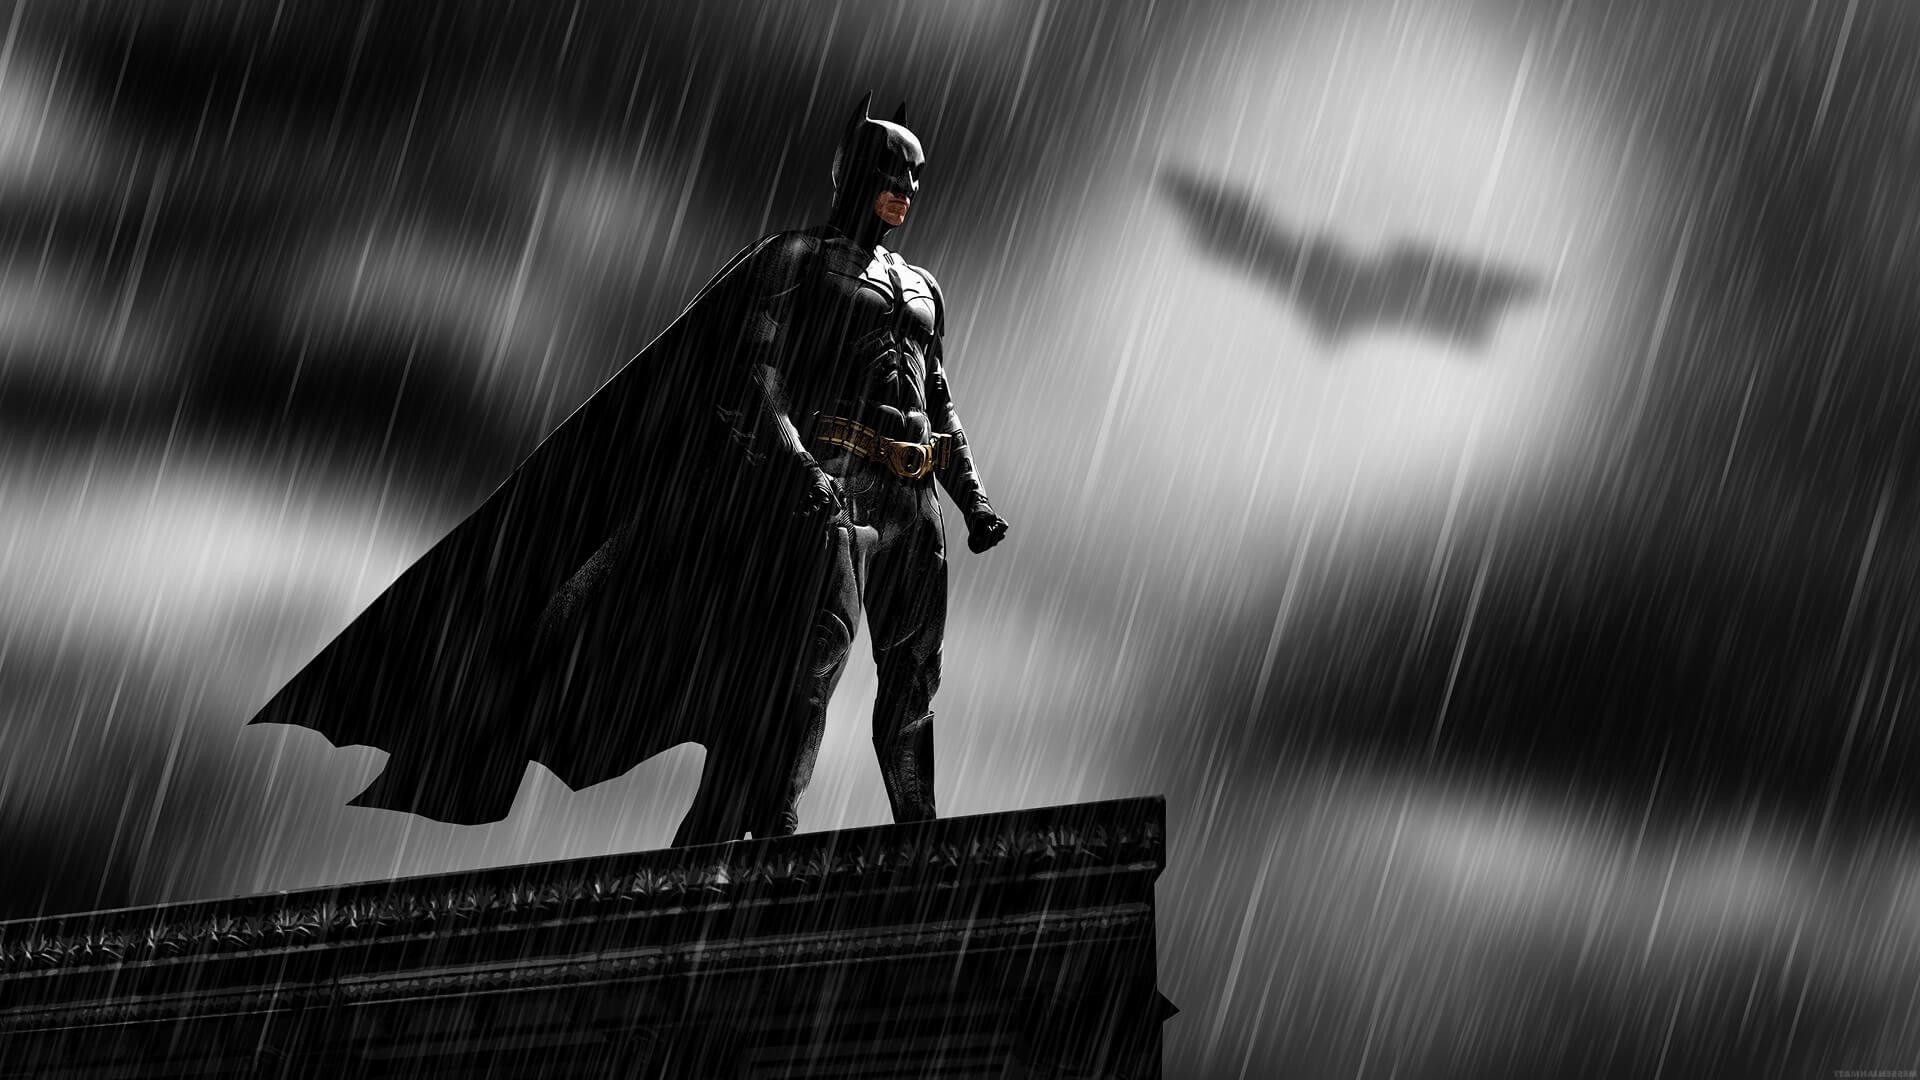 Batman HD Wallpaper 1080p Image